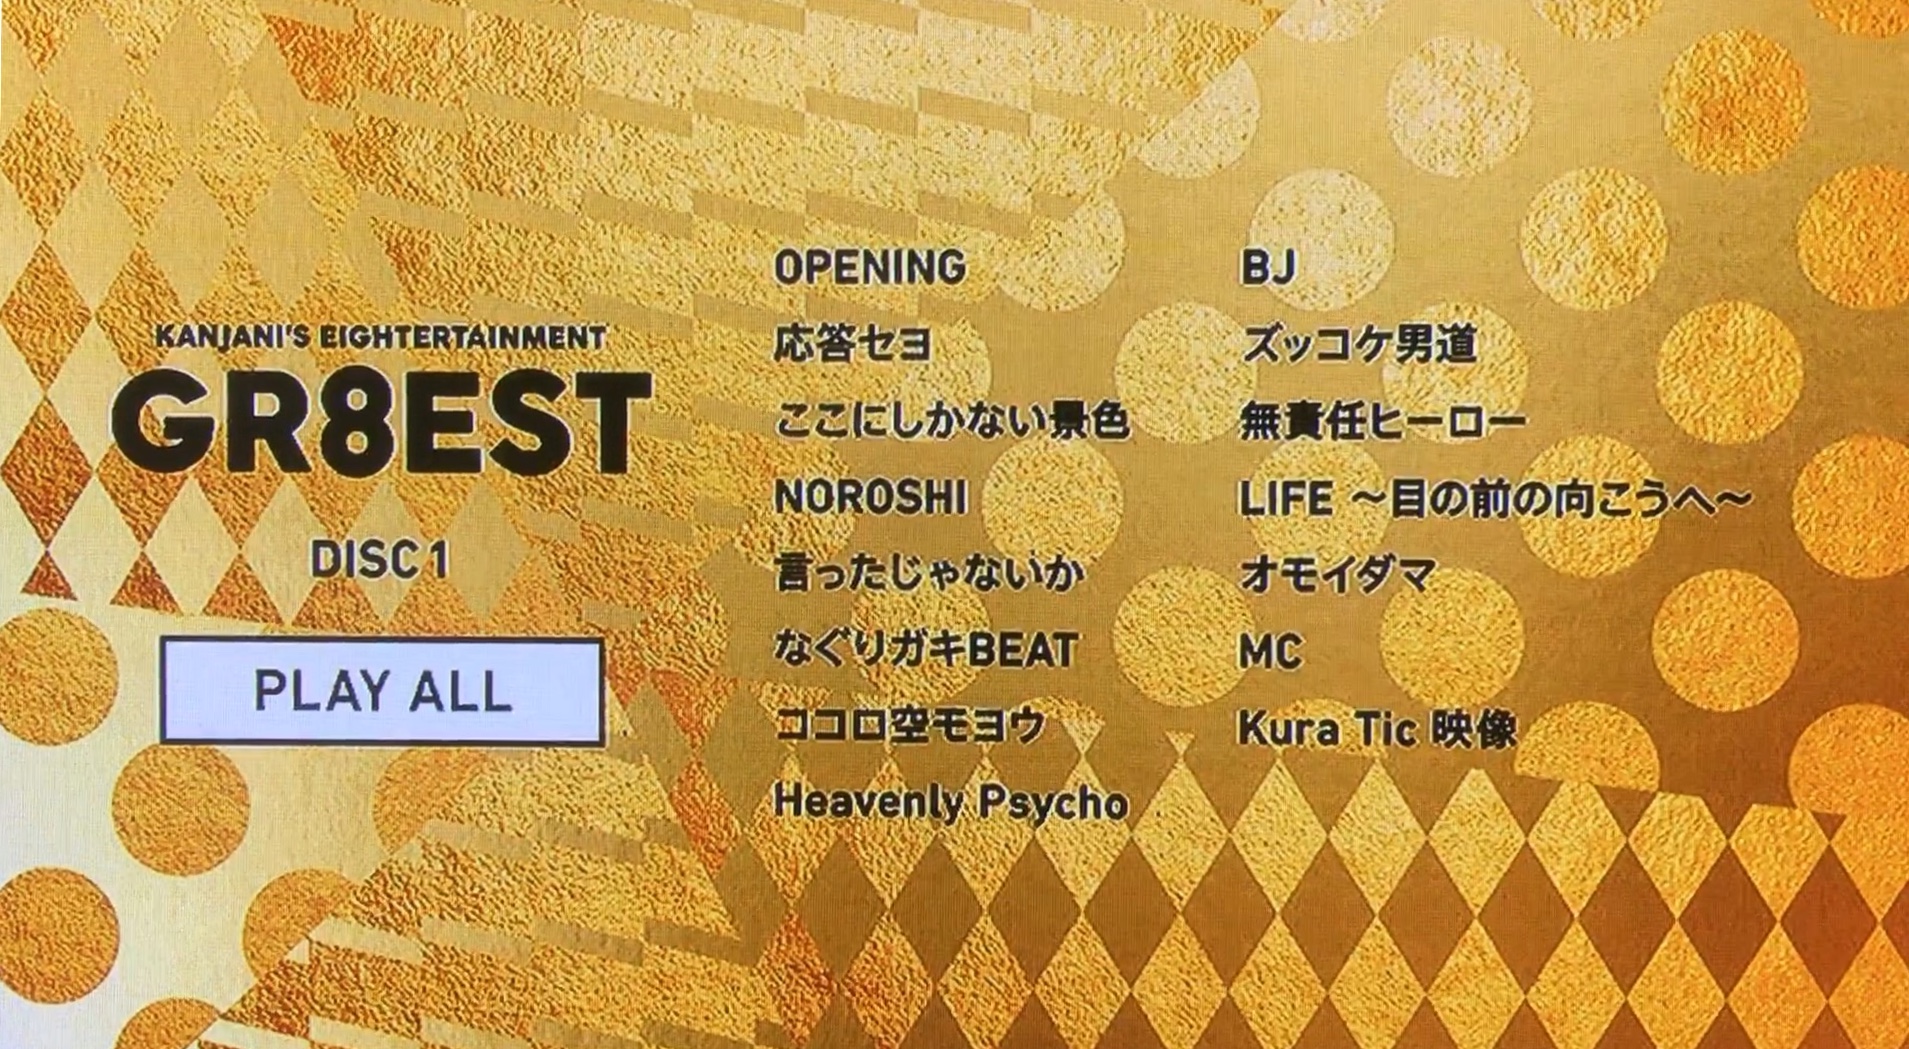 関ジャニ's エイターテインメント GR8EST（初回限定盤） DVD